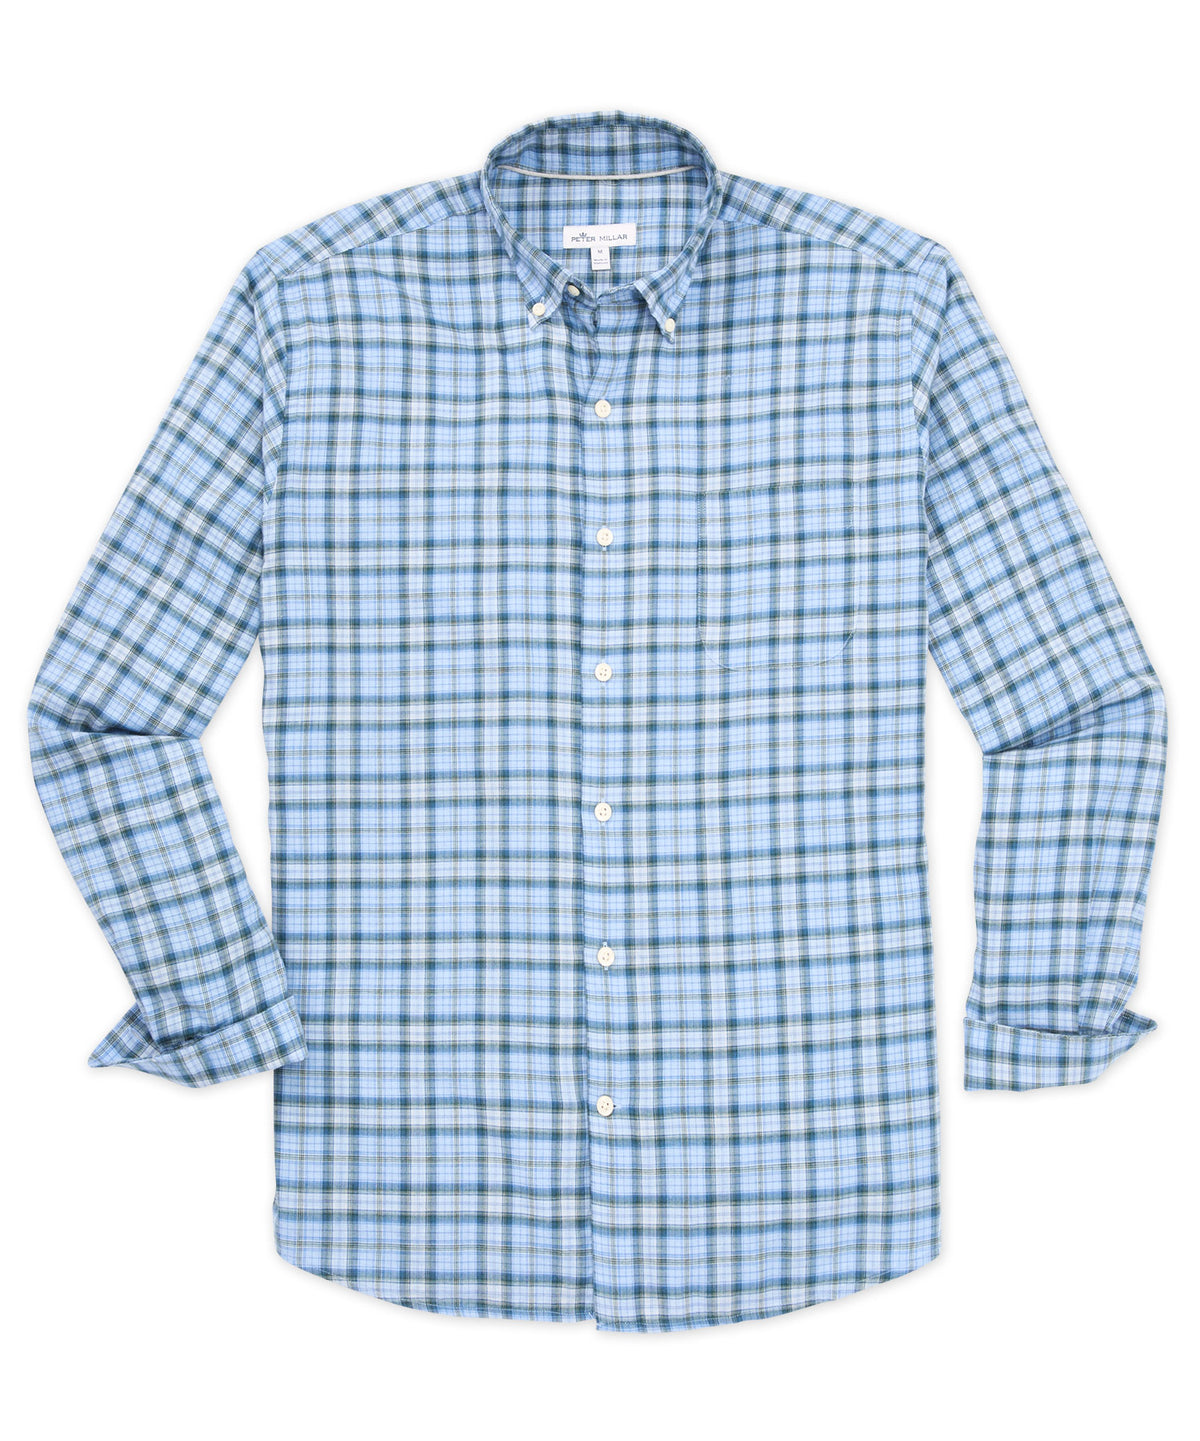 Peter Millar Autumn Soft Cotton Long Sleeve Sport Shirt, Men's Big & Tall